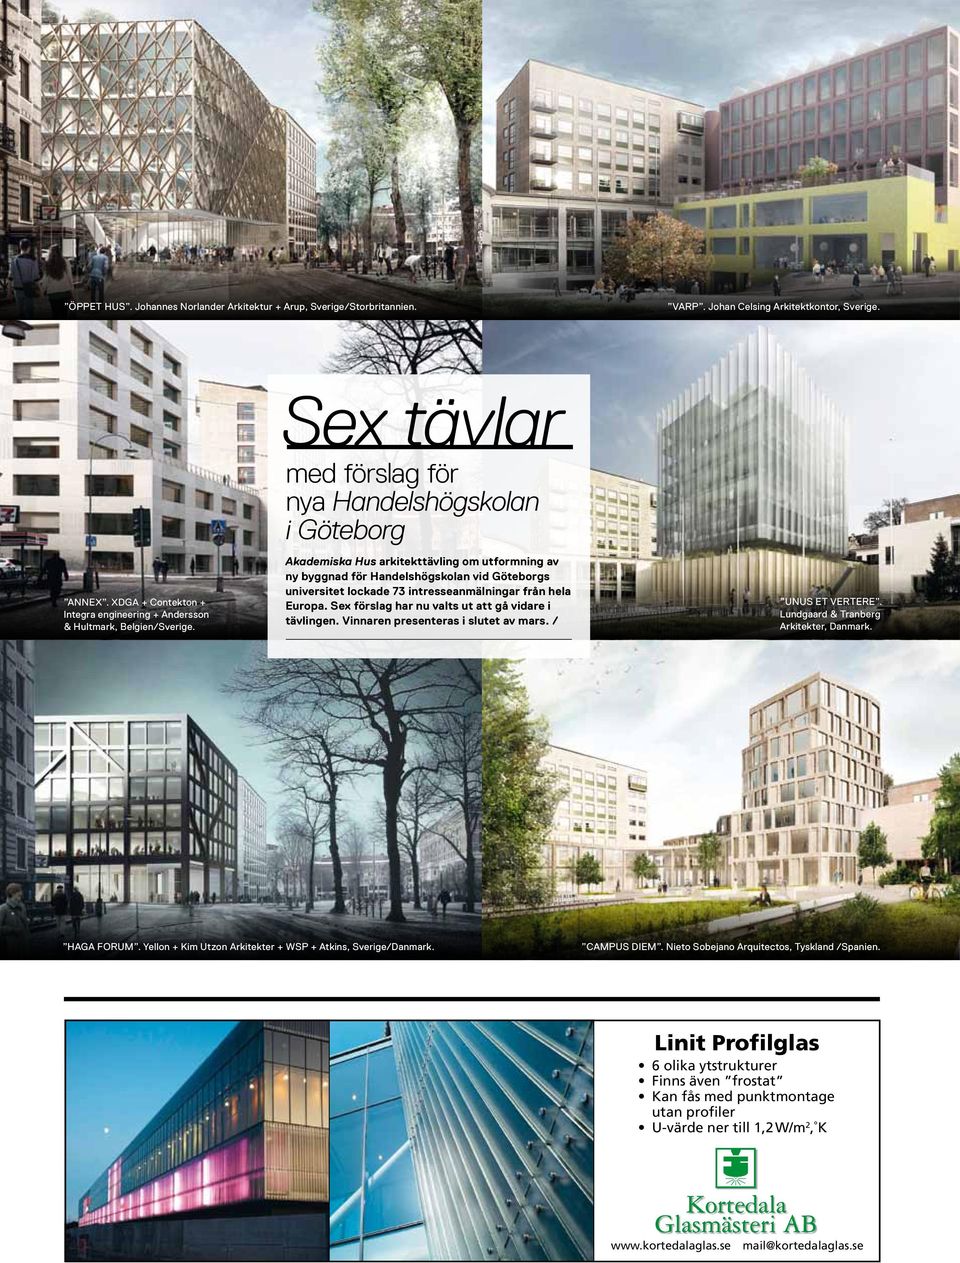 Akademiska Hus arkitekttävling om utformning av ny byggnad för Handelshögskolan vid Göteborgs universitet lockade 73 intresseanmälningar från hela Europa.